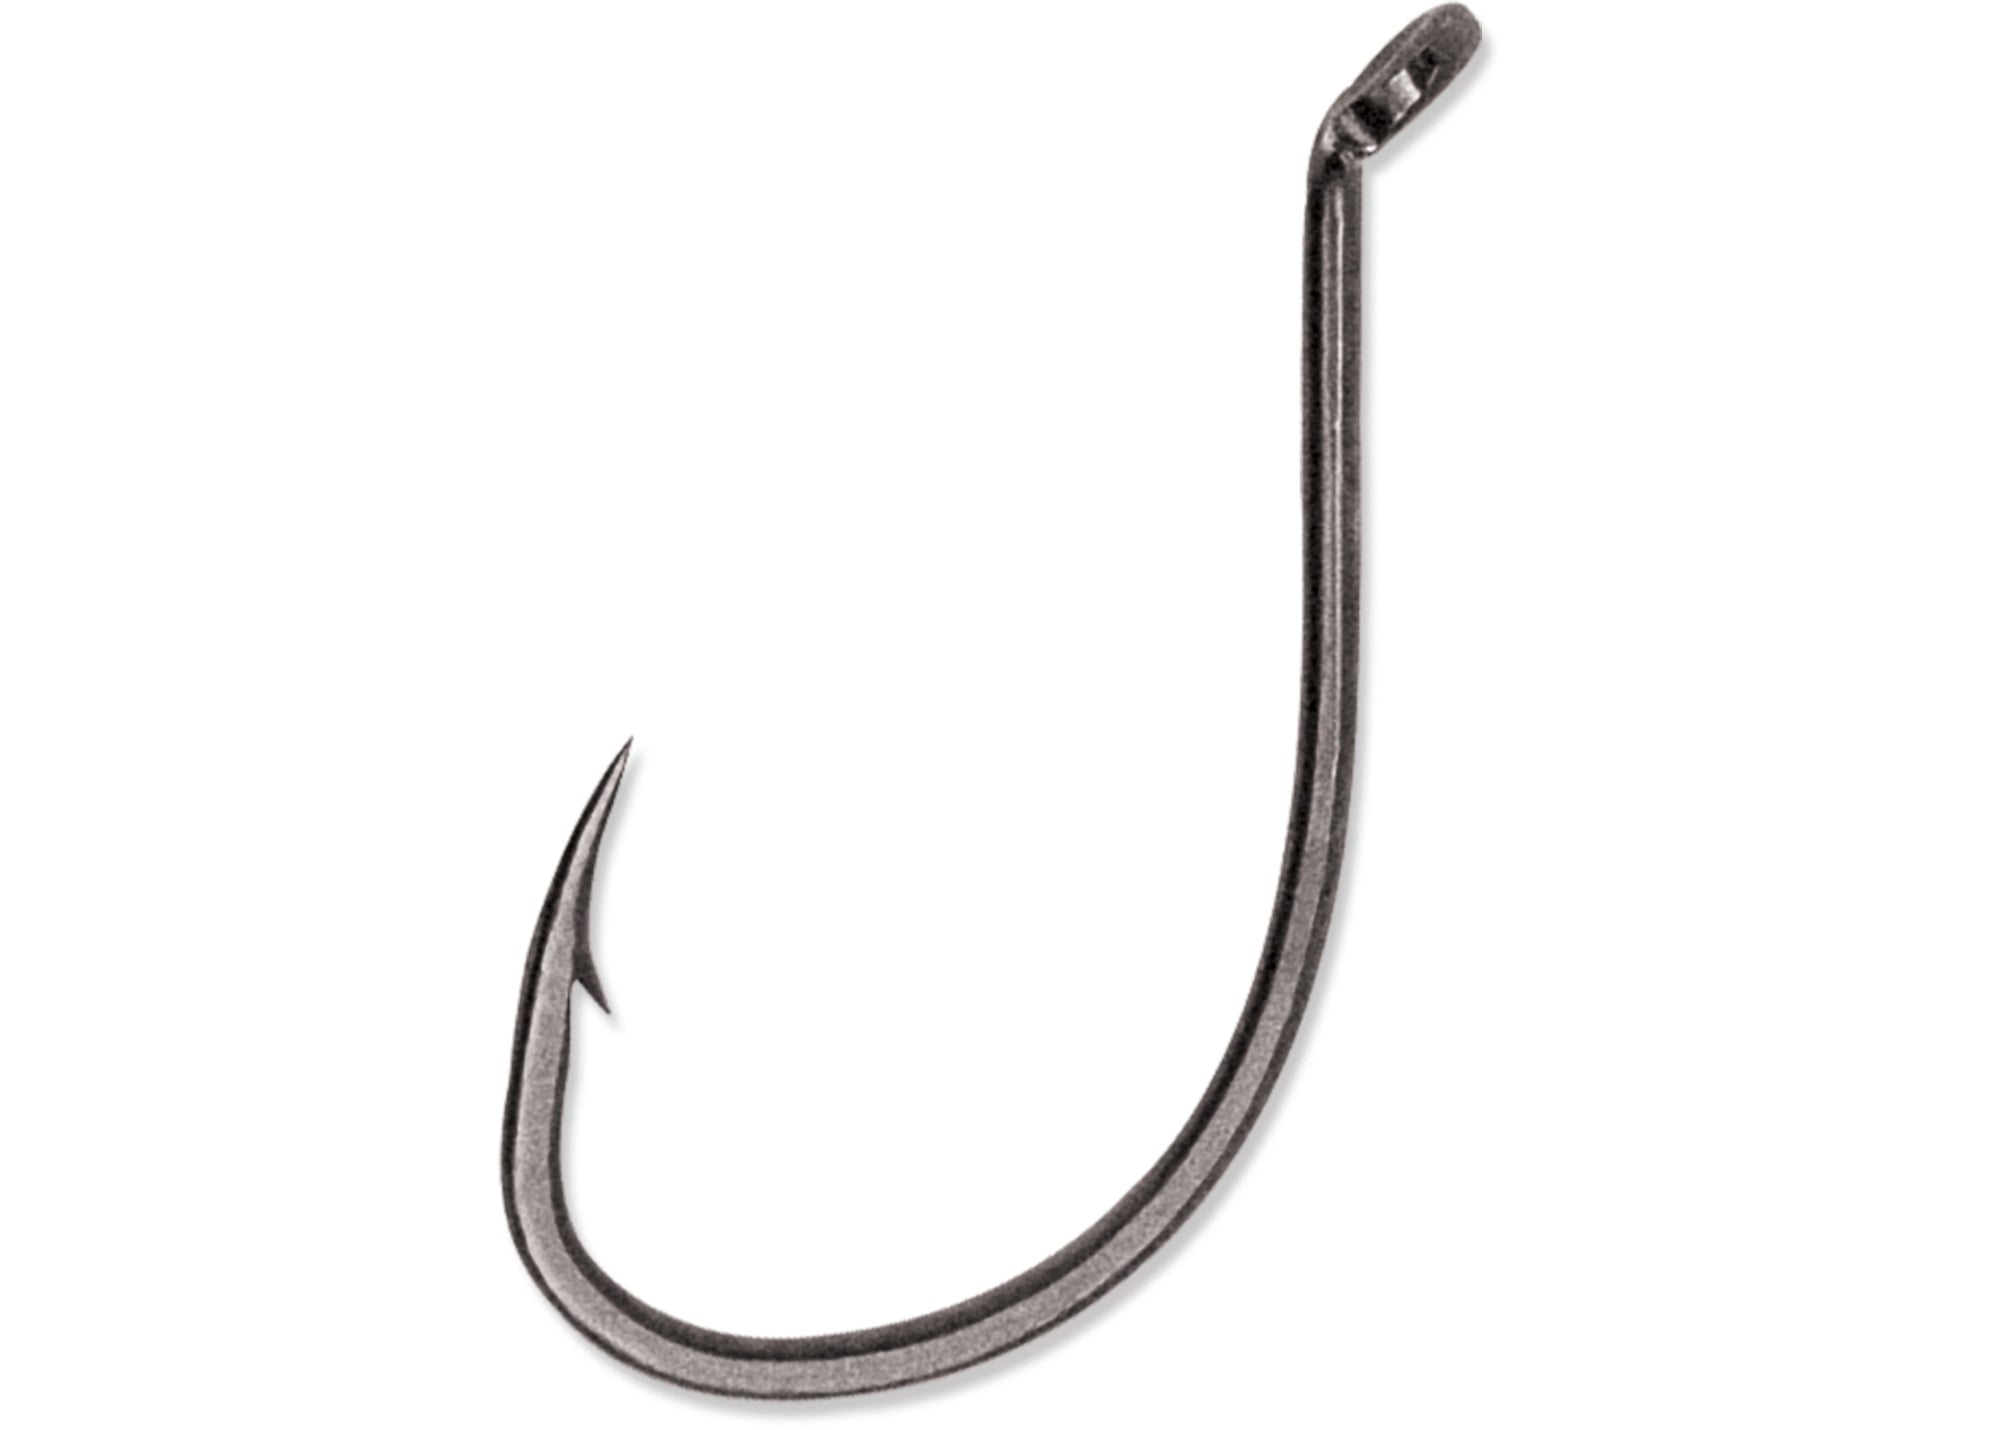 100 Size 5/0 Baitholder Fishing Hook Chemically Sharpened Black Jig Hooks USA 50 